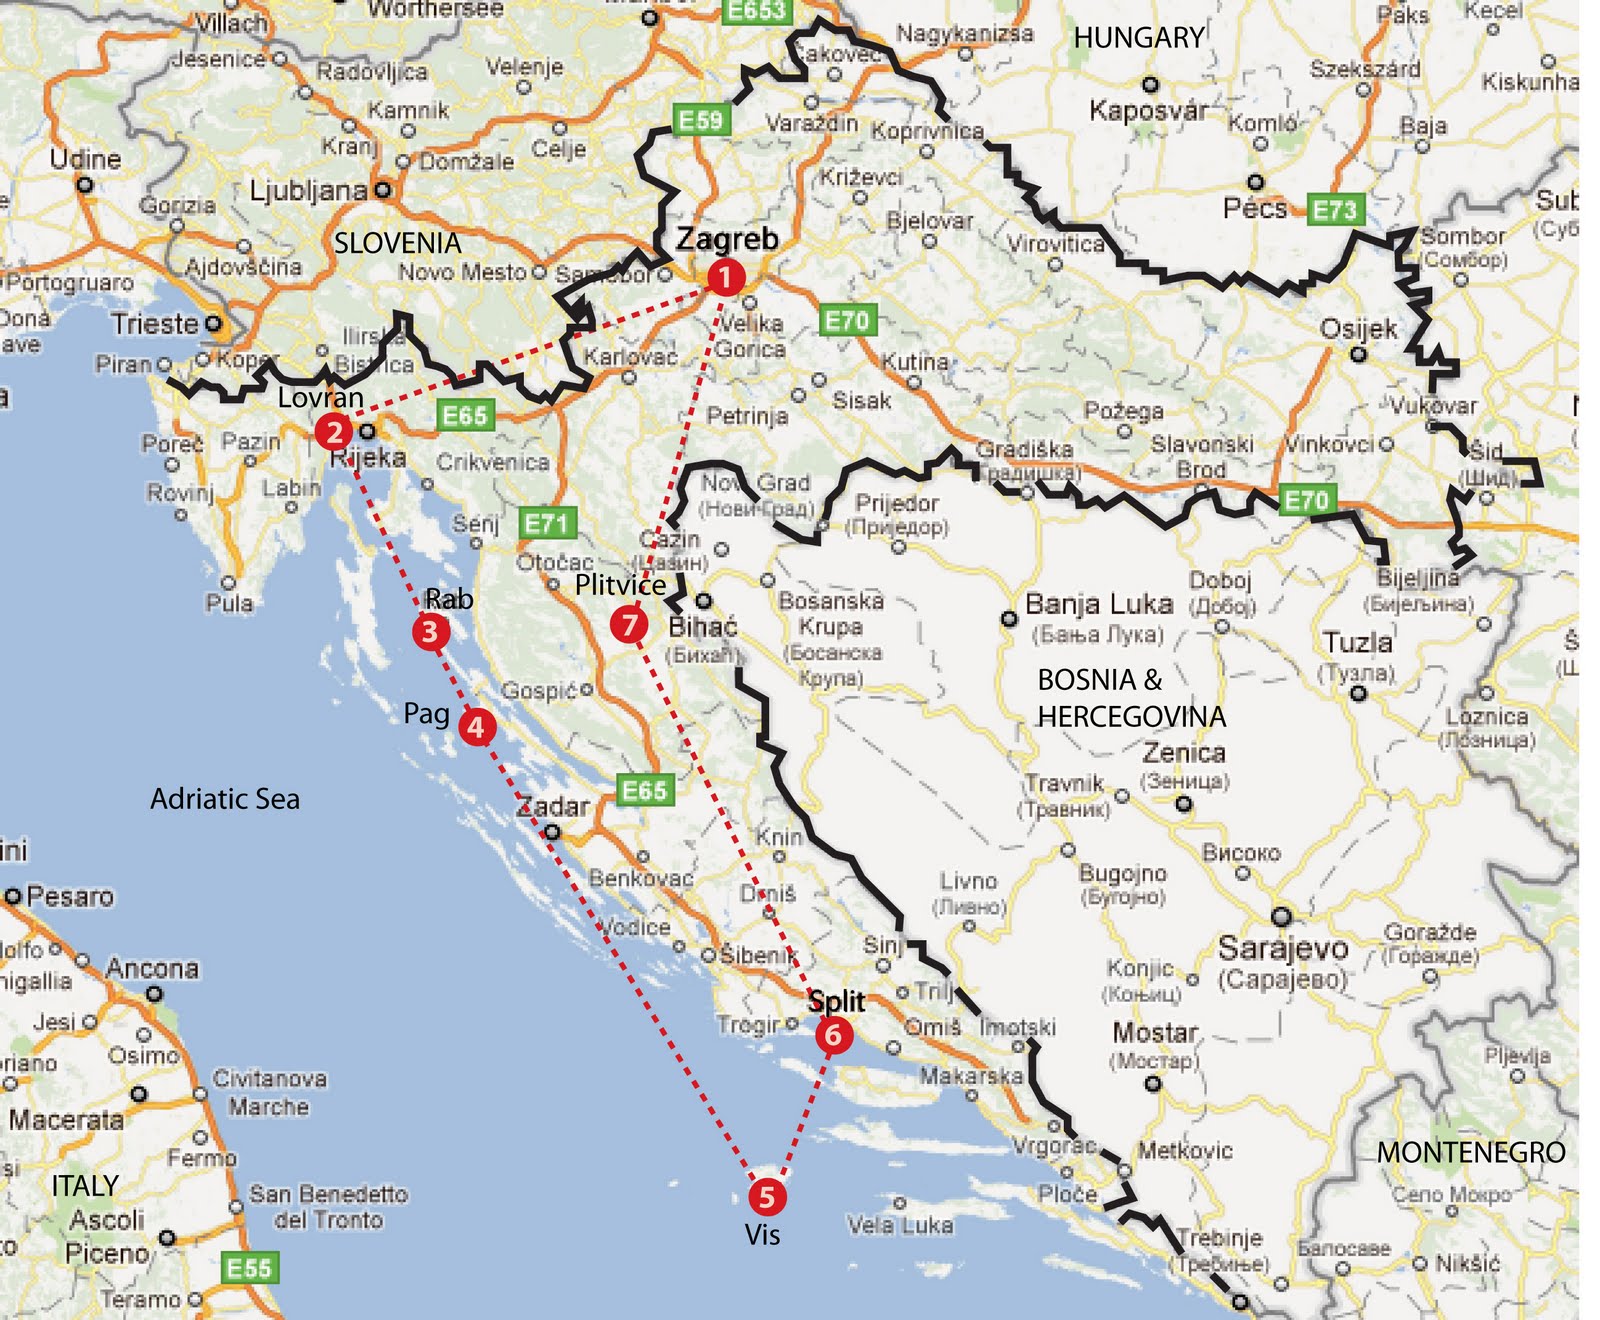 Kroatien Google Maps. meine adria karten kroatiens. insel rab kroatien